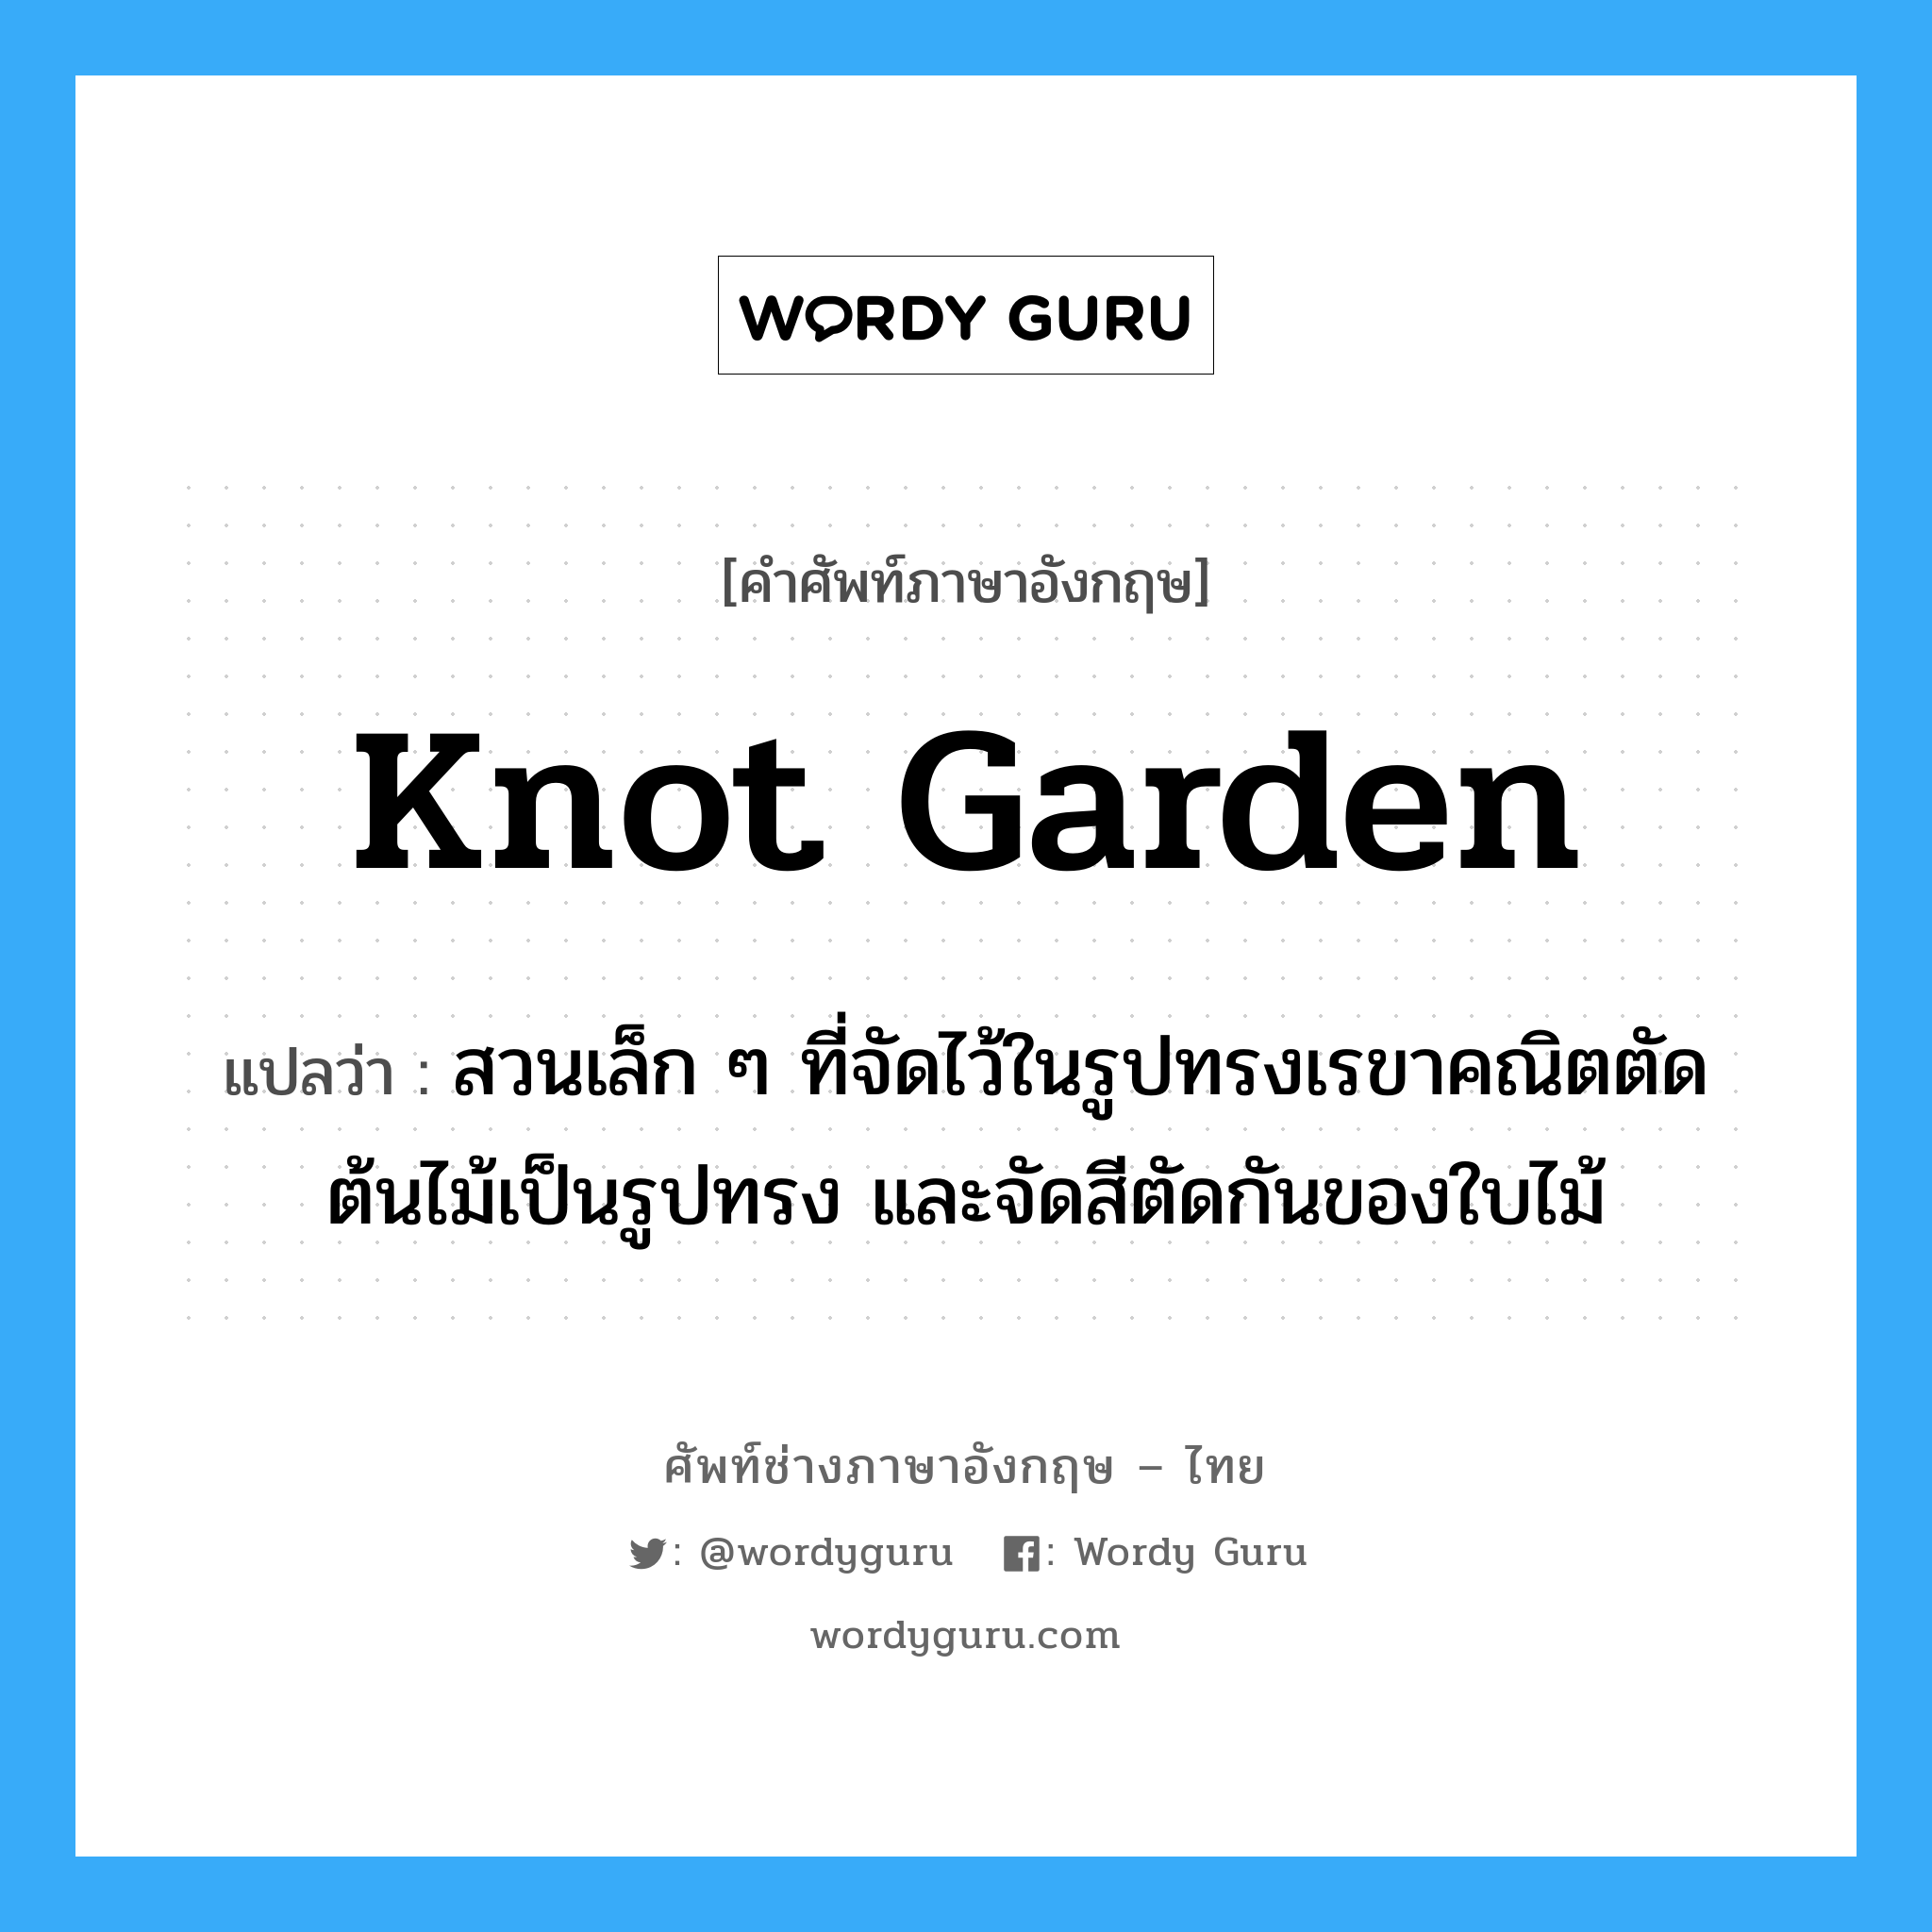 knot garden แปลว่า?, คำศัพท์ช่างภาษาอังกฤษ - ไทย knot garden คำศัพท์ภาษาอังกฤษ knot garden แปลว่า สวนเล็ก ๆ ที่จัดไว้ในรูปทรงเรขาคณิตตัดต้นไม้เป็นรูปทรง และจัดสีตัดกันของใบไม้